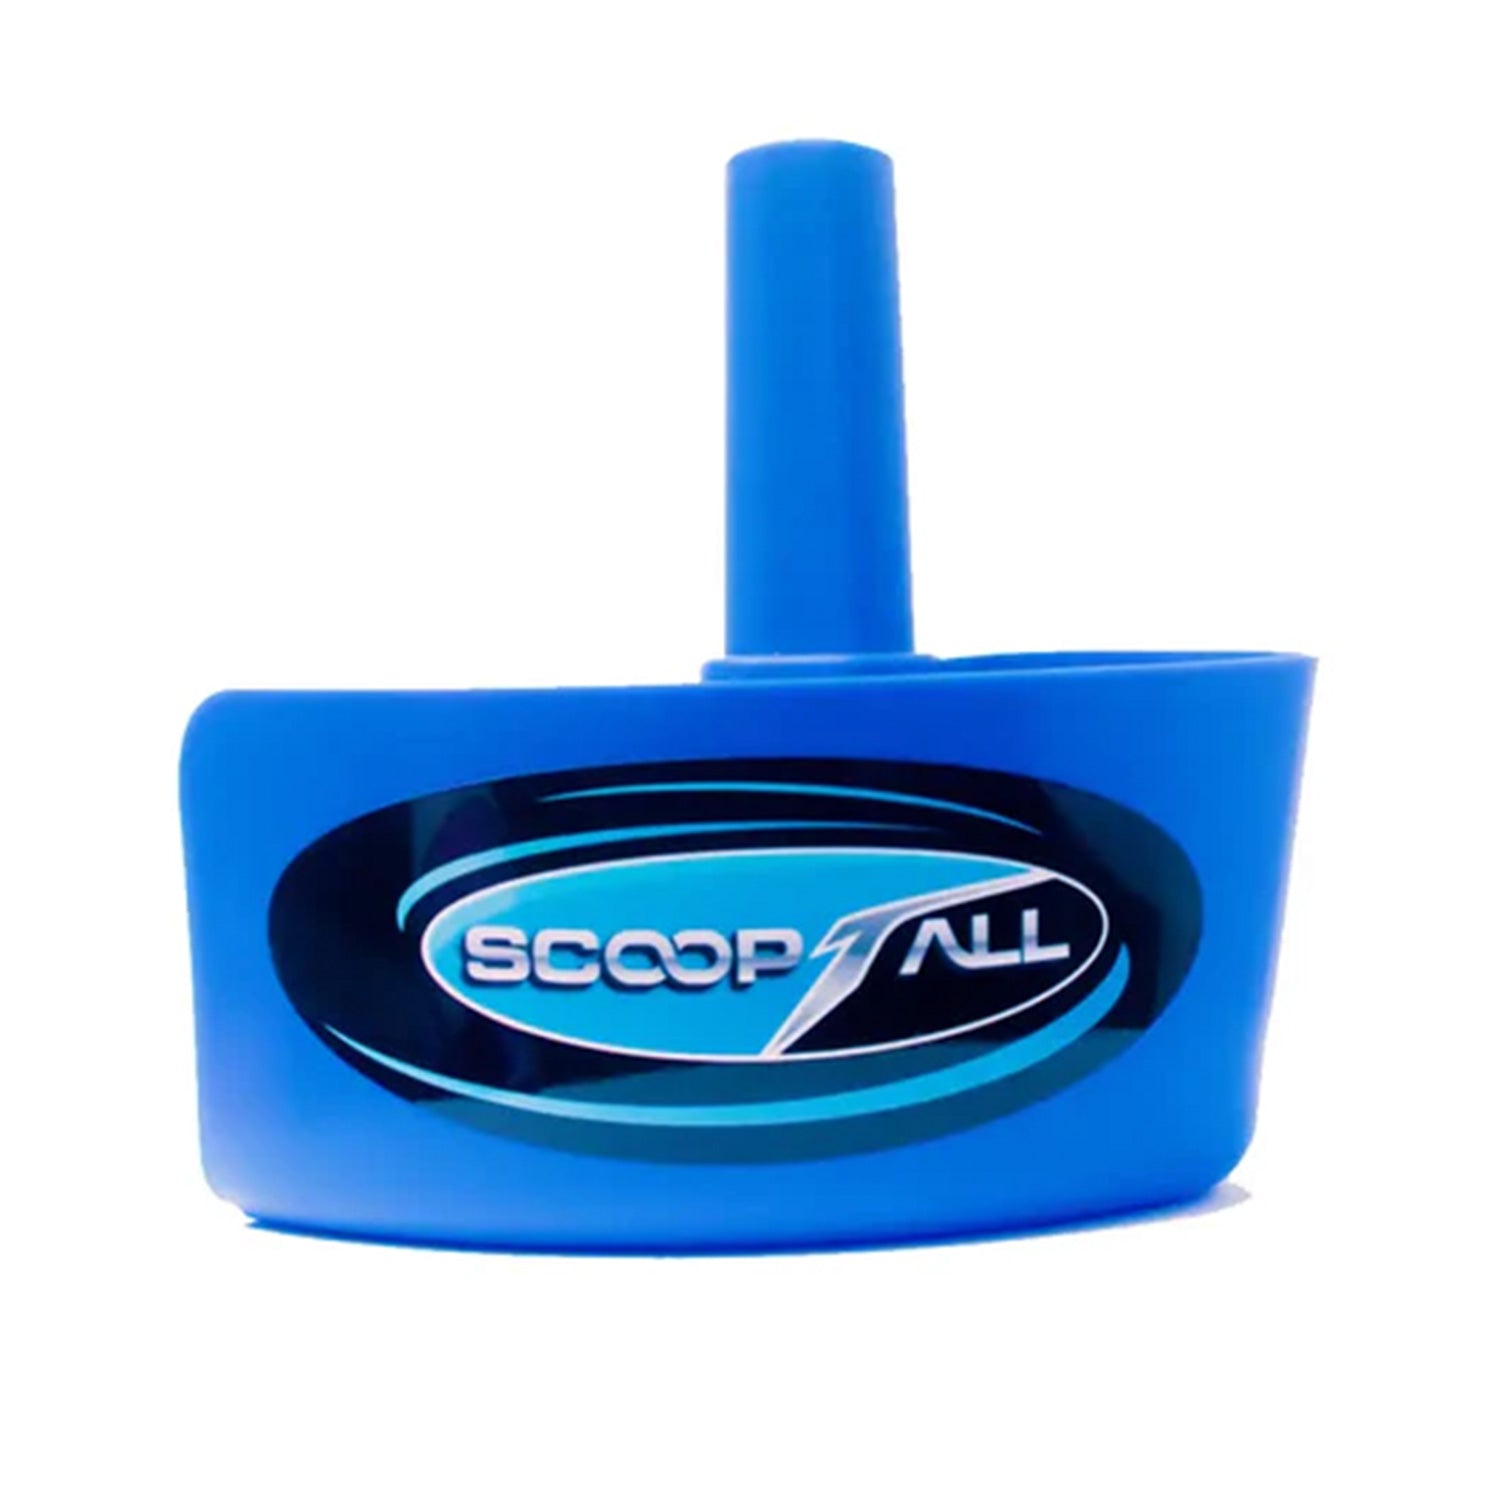 Scoop-t-all Bucket Scoop - BLUE